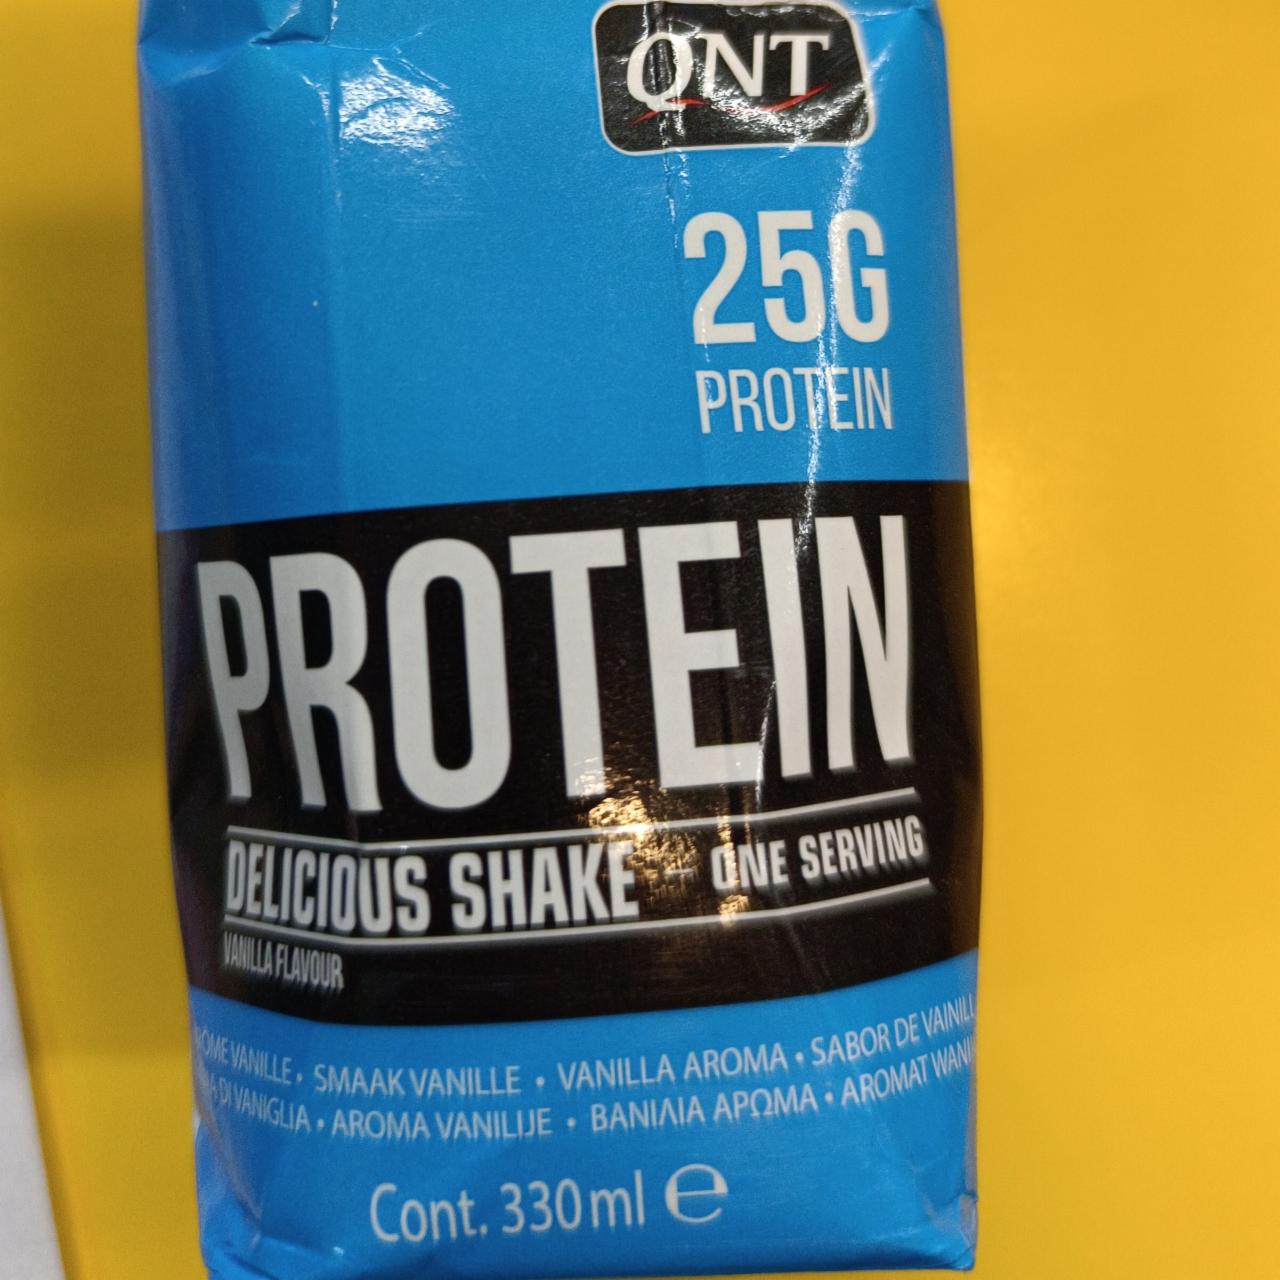 Fotografie - Protein delicious shake vanilla QNT